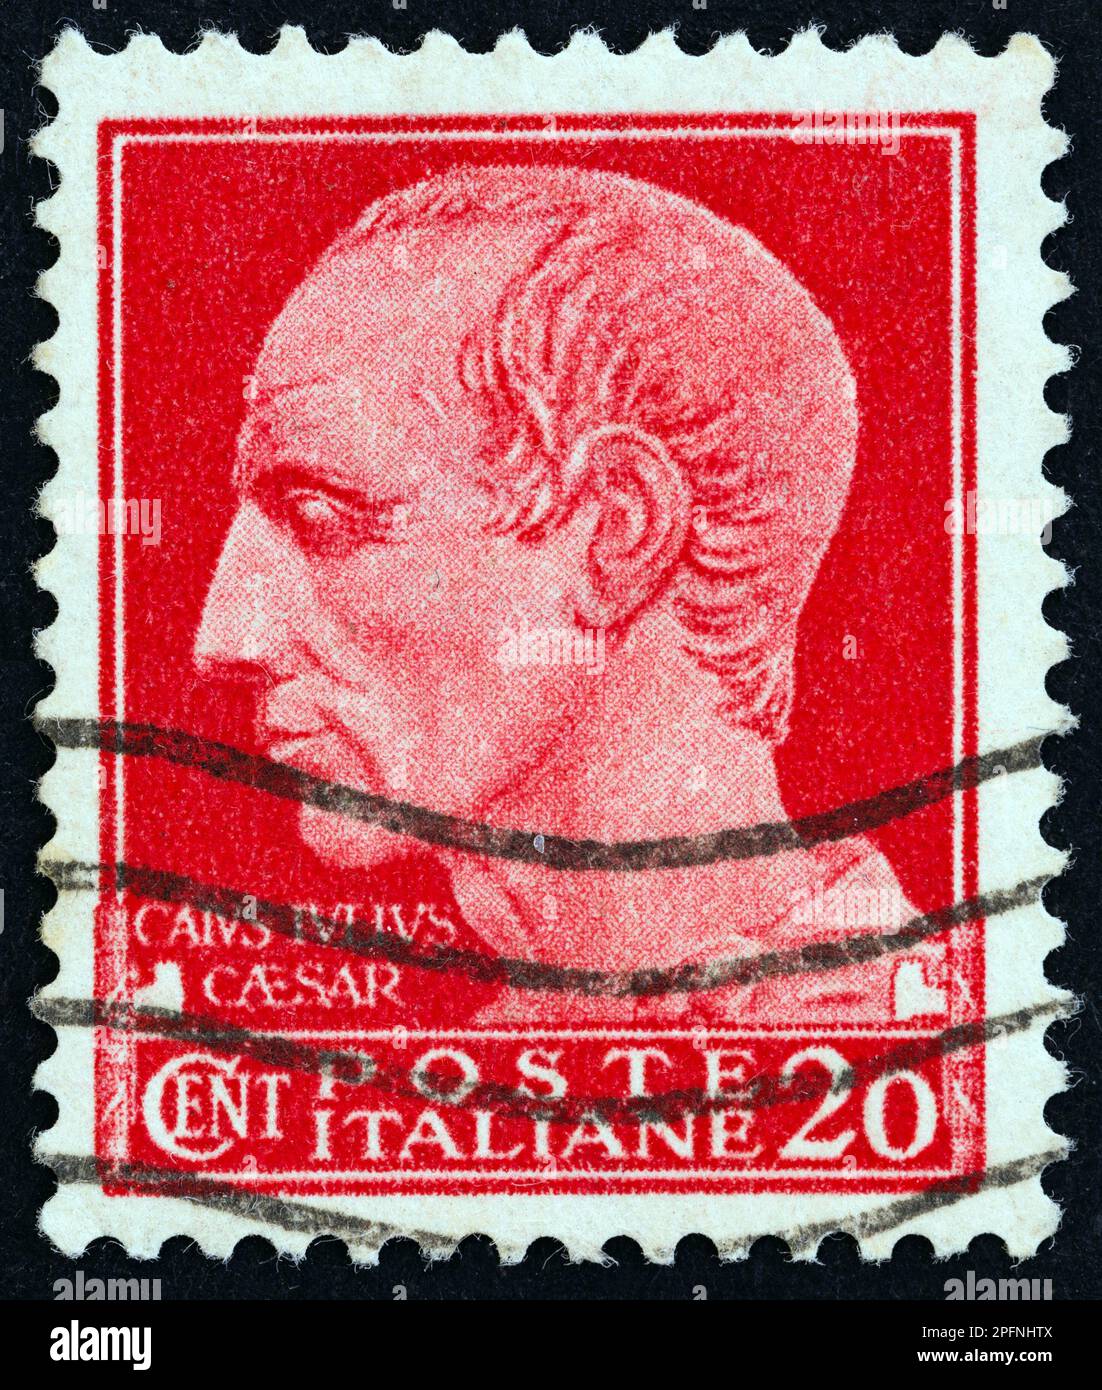 ITALIEN - CIRCA 1929: Ein in Italien gedruckter Stempel zeigt Julius Caesar, circa 1929. Stockfoto